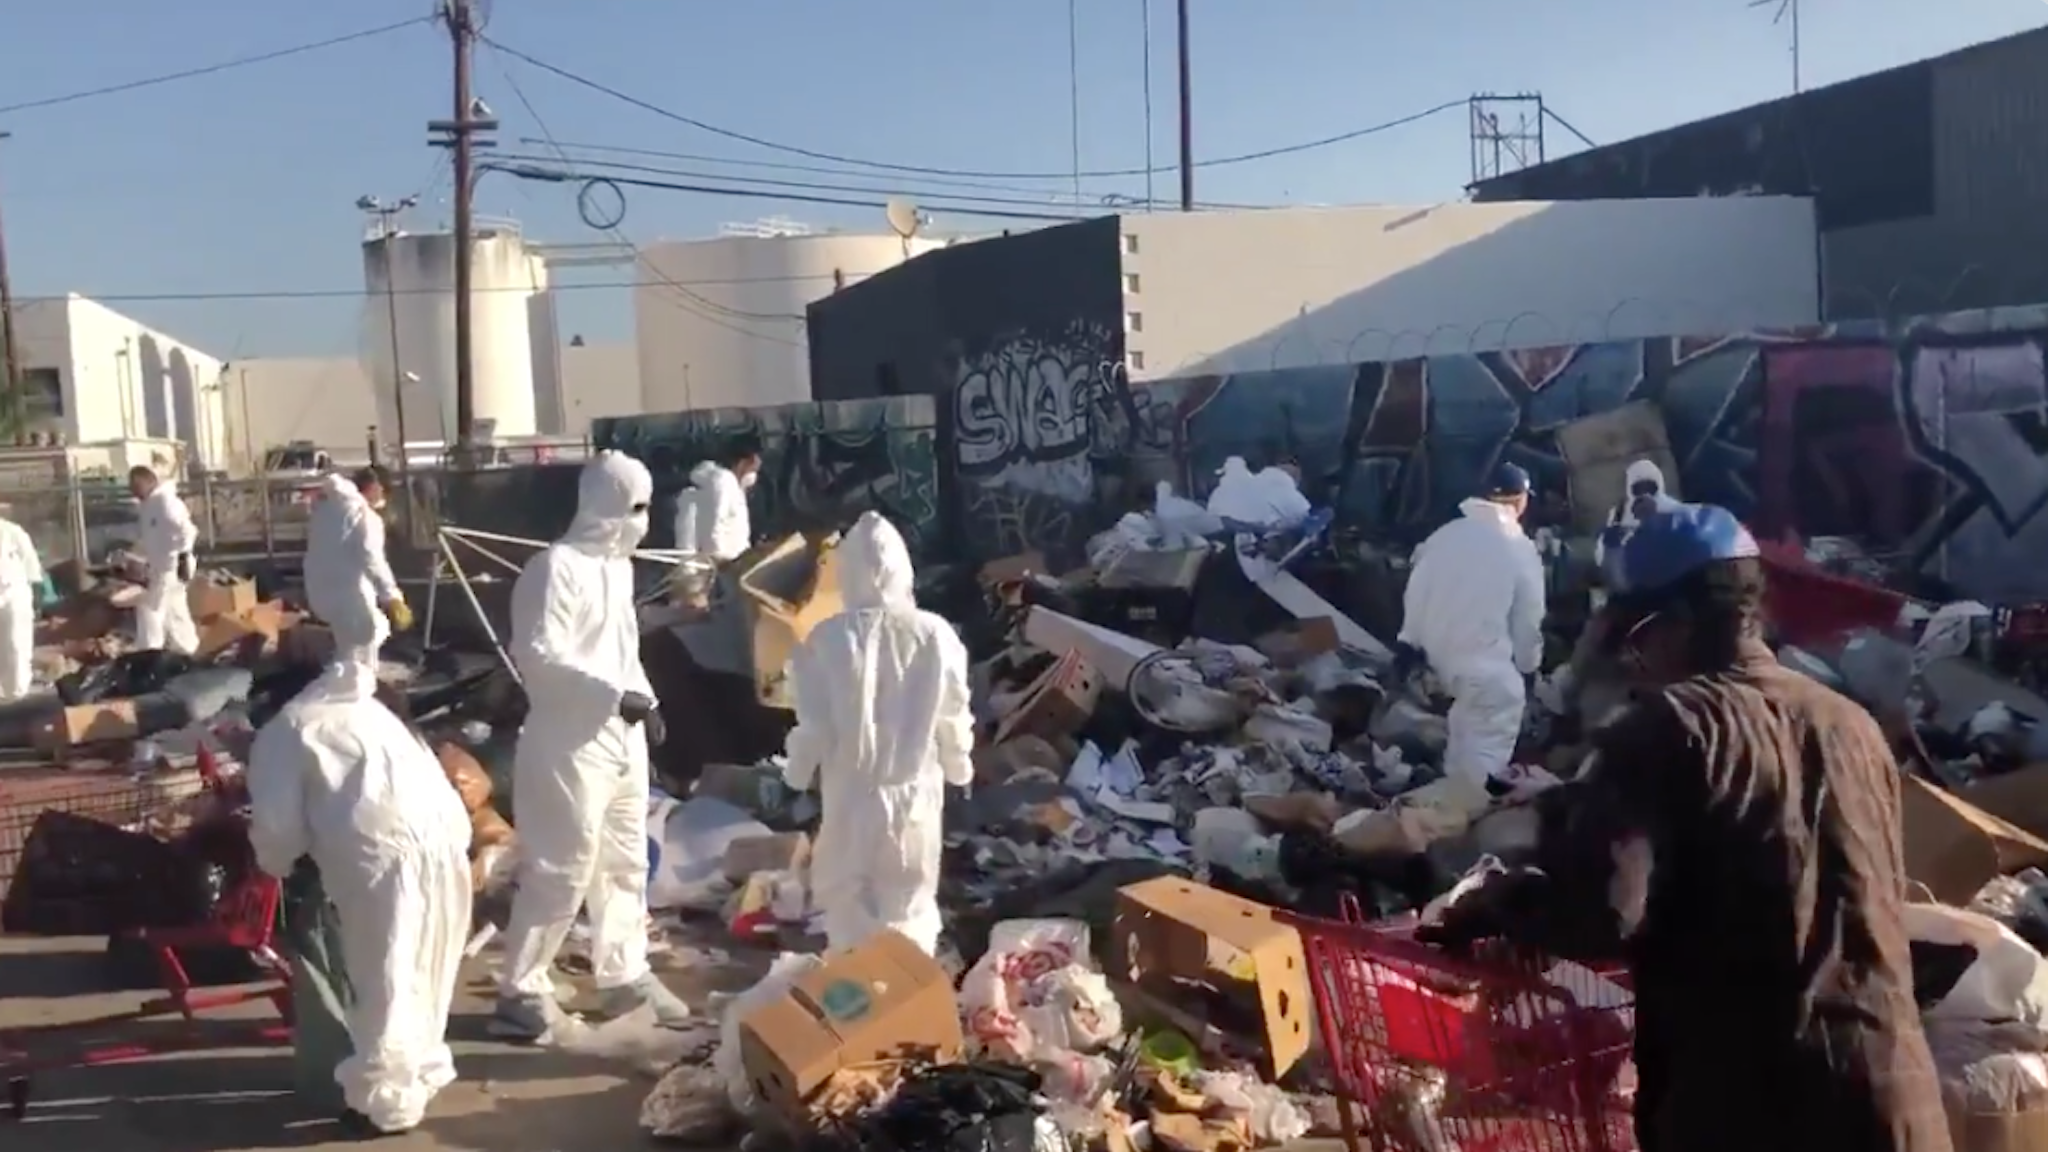 Activists help clean up trash-strewn Los Angeles.